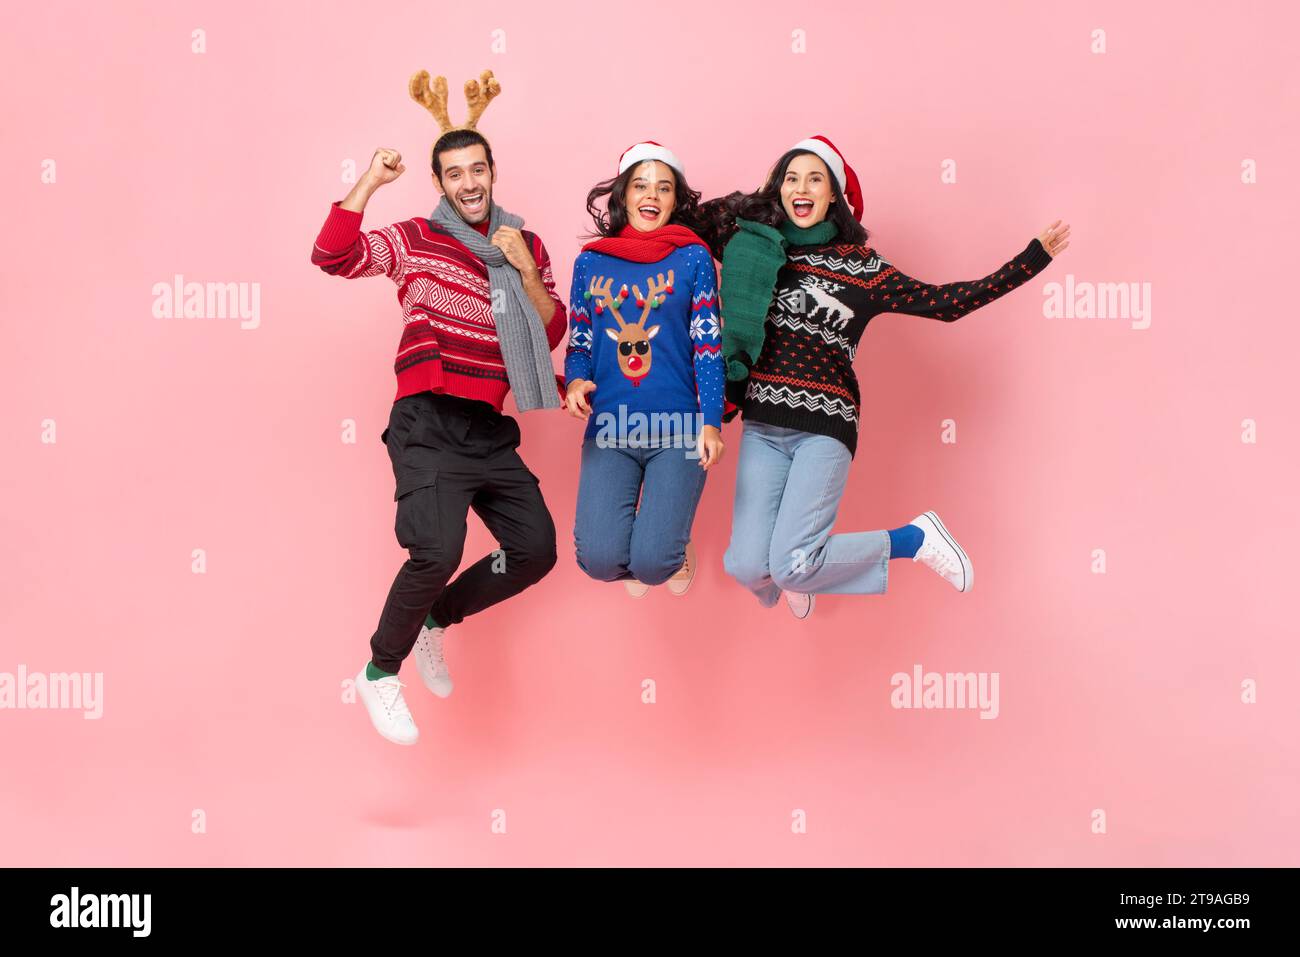 Gruppo di amici felici, maschi e femmine, che indossano un abbigliamento natalizio, saltano in uno studio di registrazione con sfondo isolato di colore rosa Foto Stock